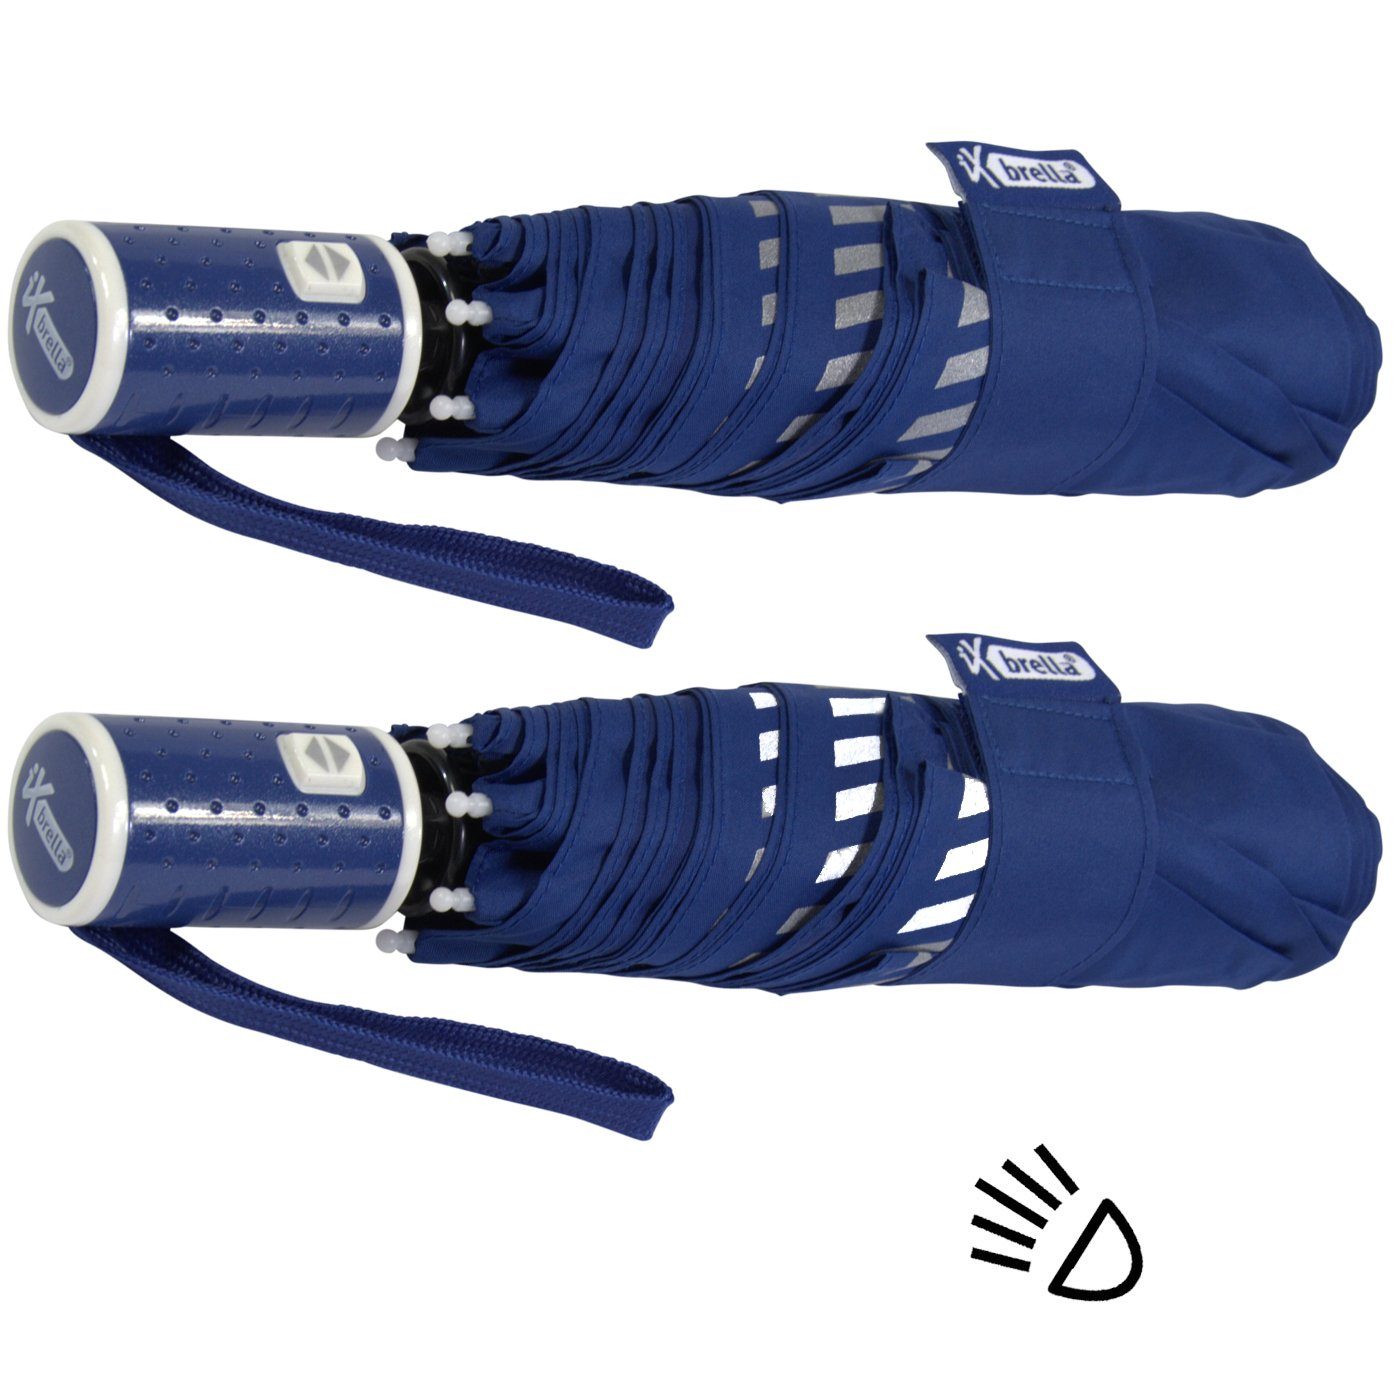 iX-brella Taschenregenschirm Kinderschirm mit Auf-Zu-Automatik, Reflex-Streifen blau durch Sicherheit - reflektierend